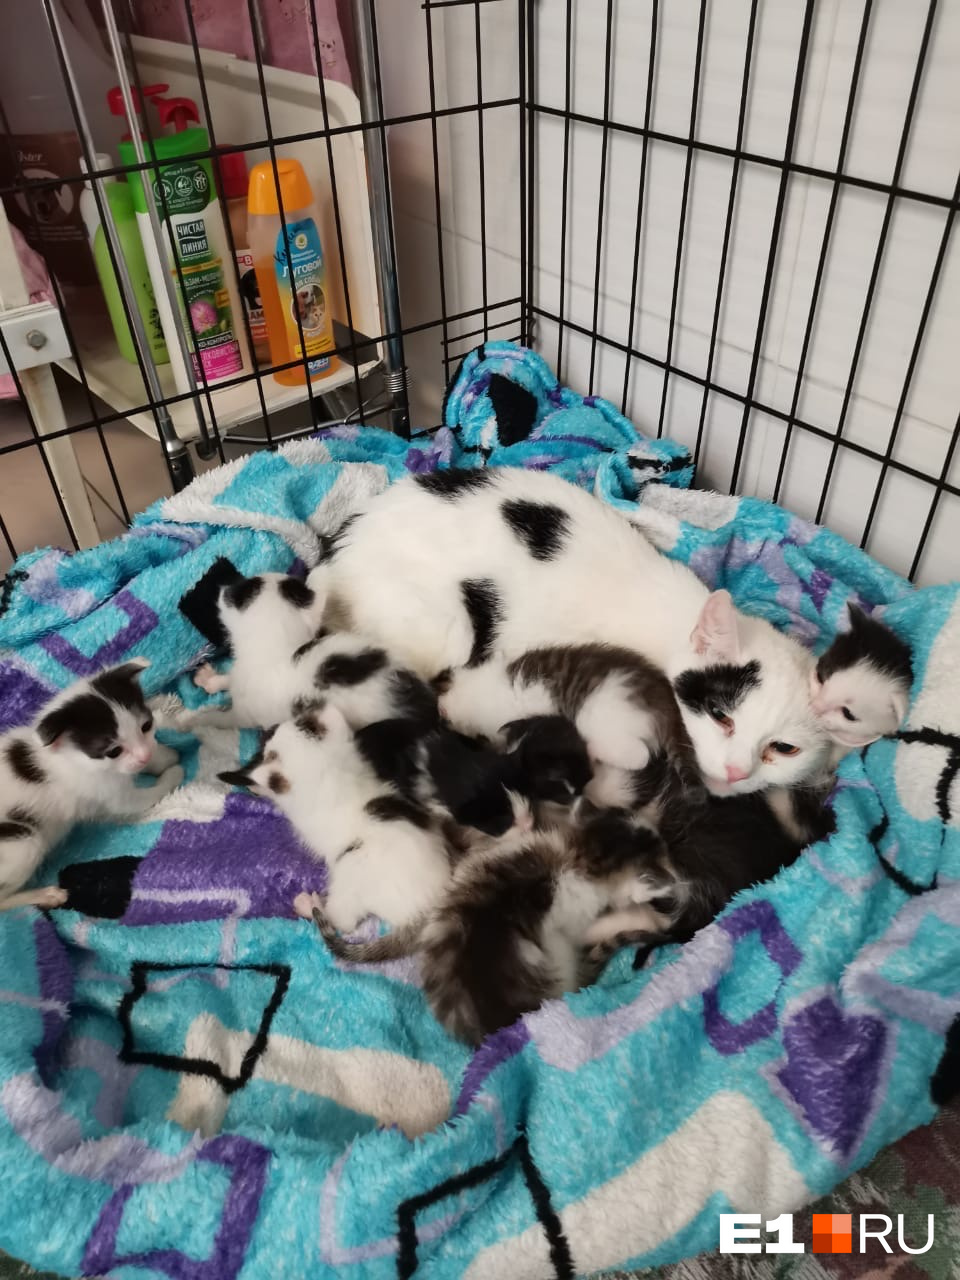 Несколько кошек оказались беременными